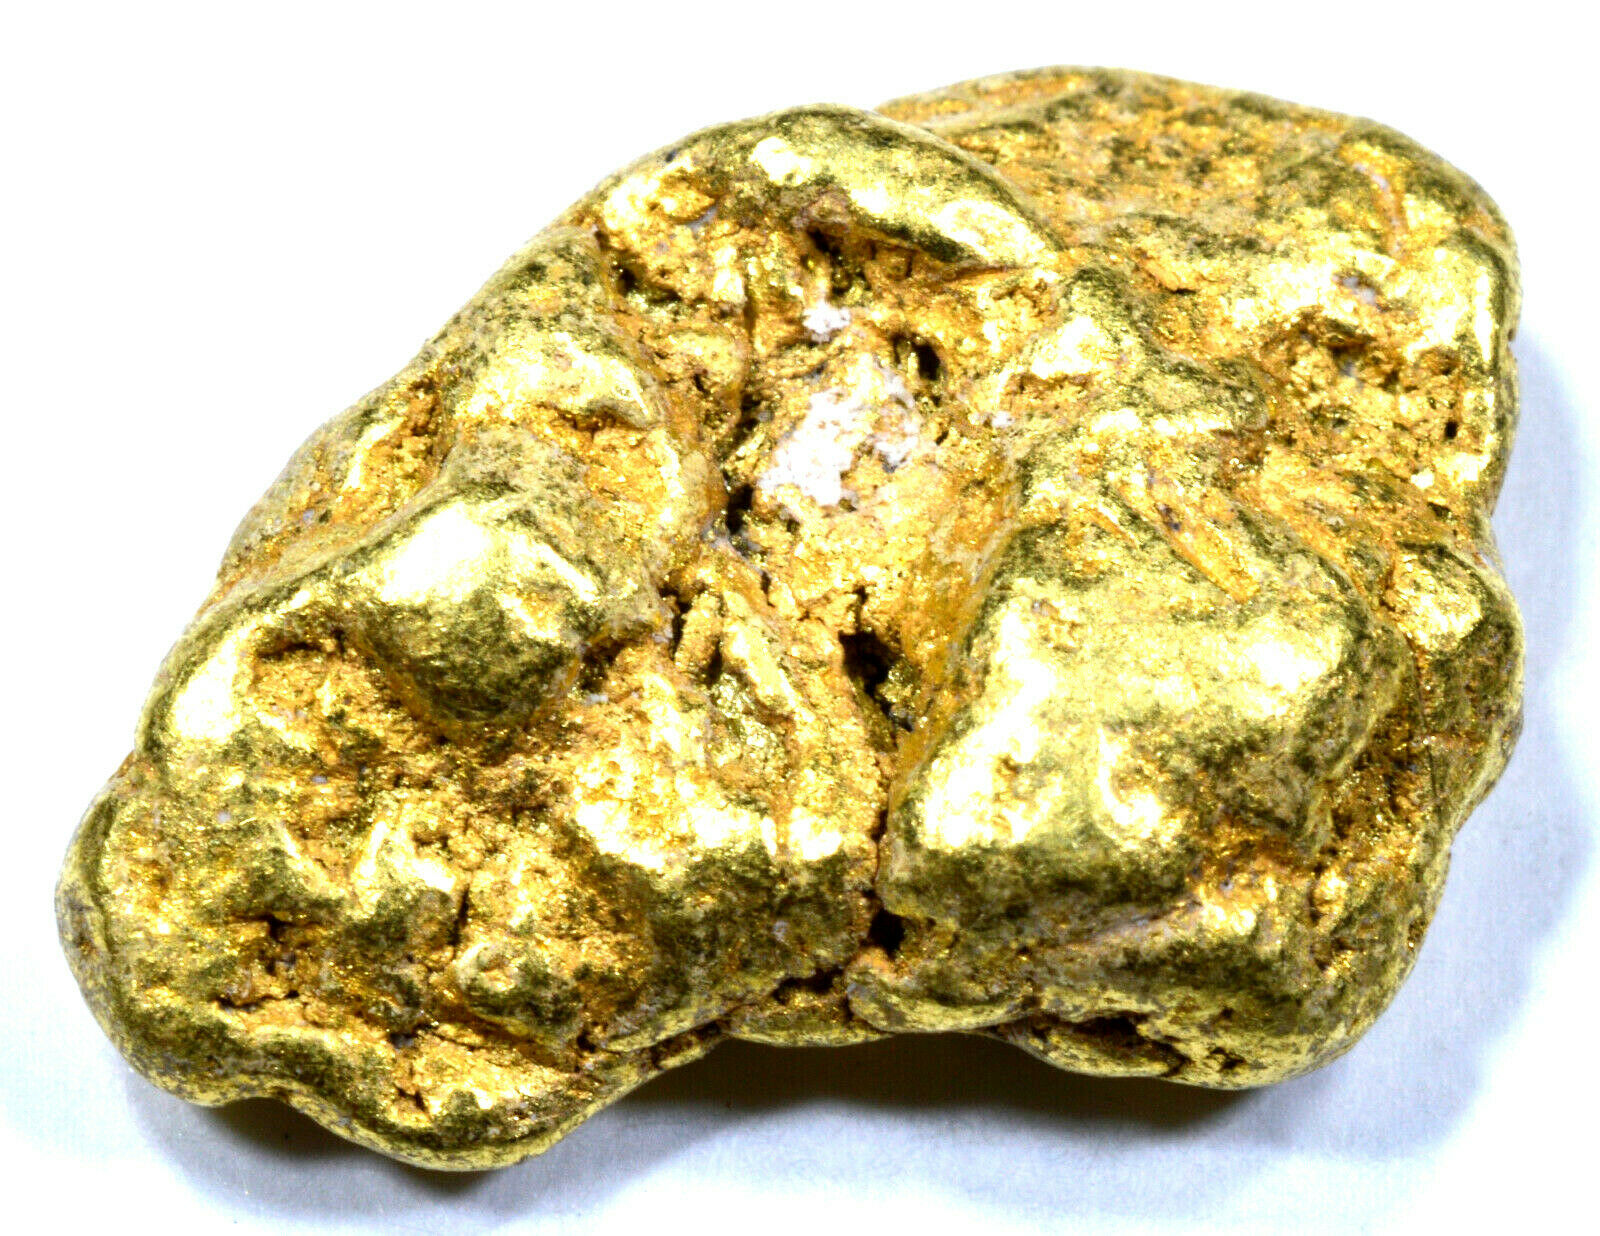 5.253 GRAMS ALASKAN YUKON NATURAL PURE GOLD NUGGET GENUINE (#N412) C GRADE